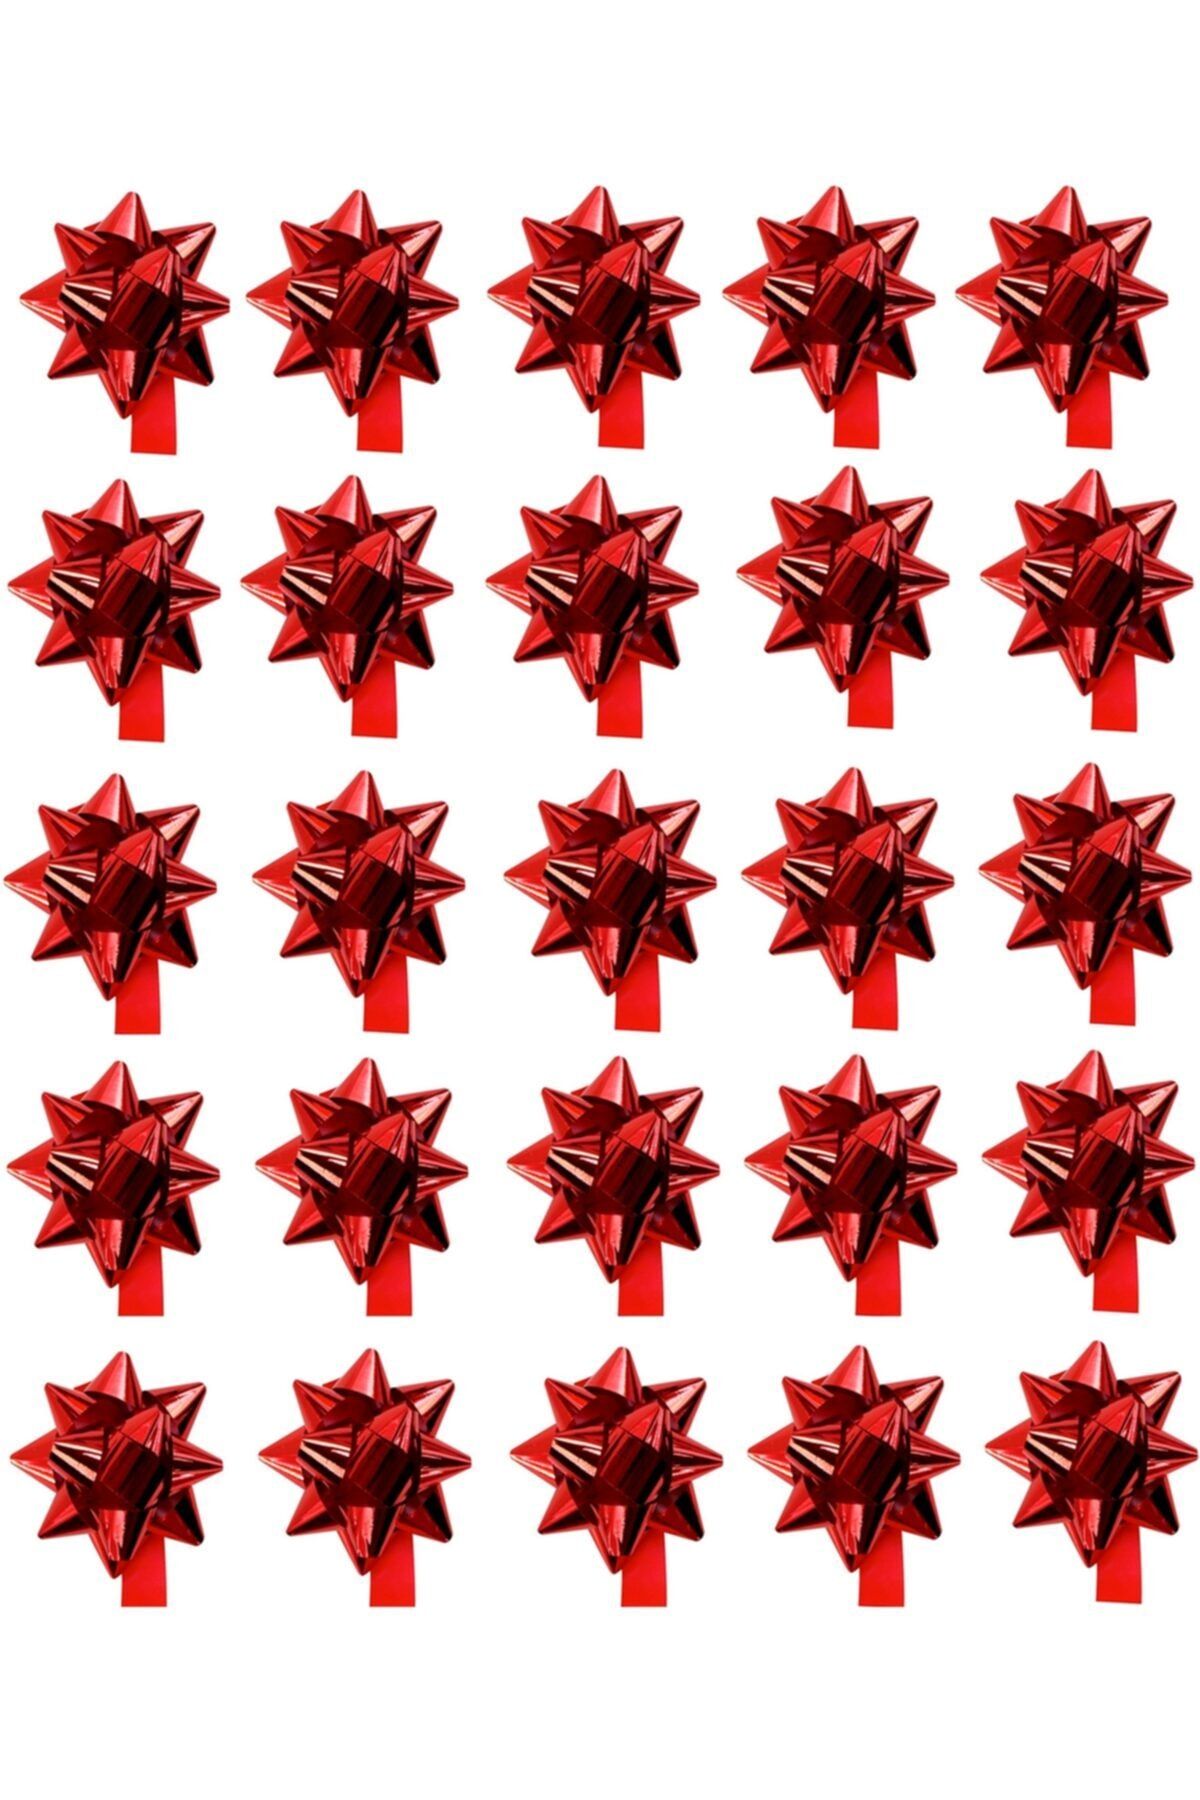 Happyland Sevgililer Günü Hediye Paketi - Hediye Kutusu Süsleme Kırmızı Metalik Fiyonk Süs Çekçek 25 Adet